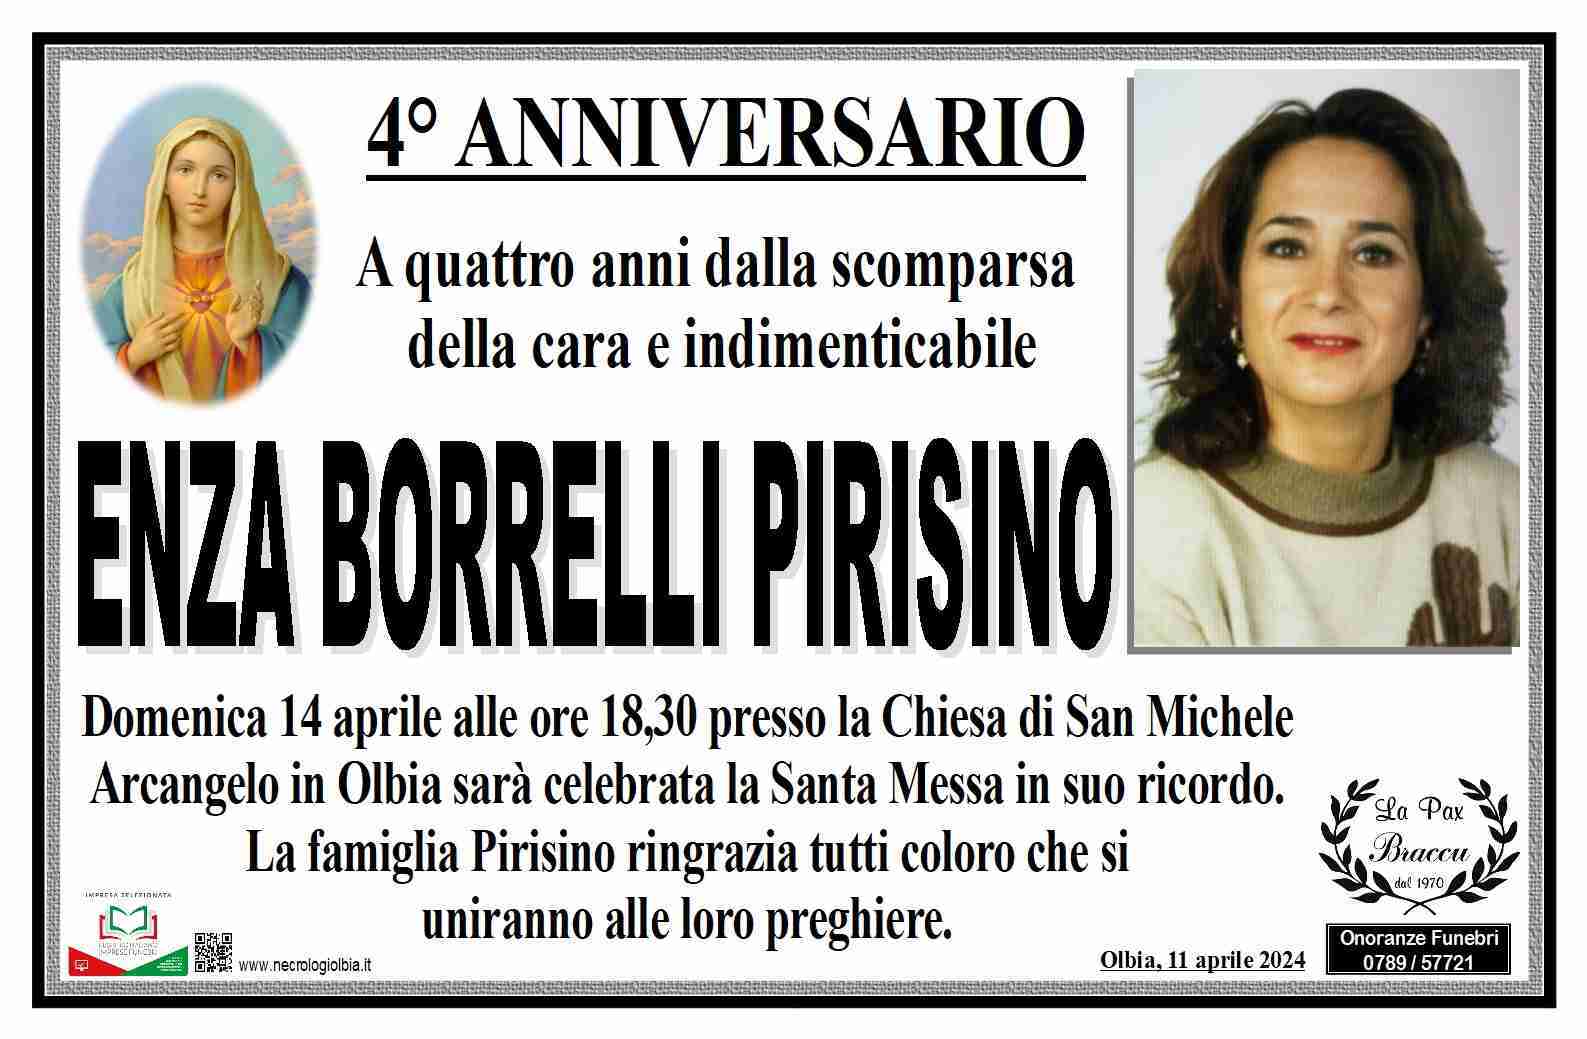 Enza Borrelli Pirisino